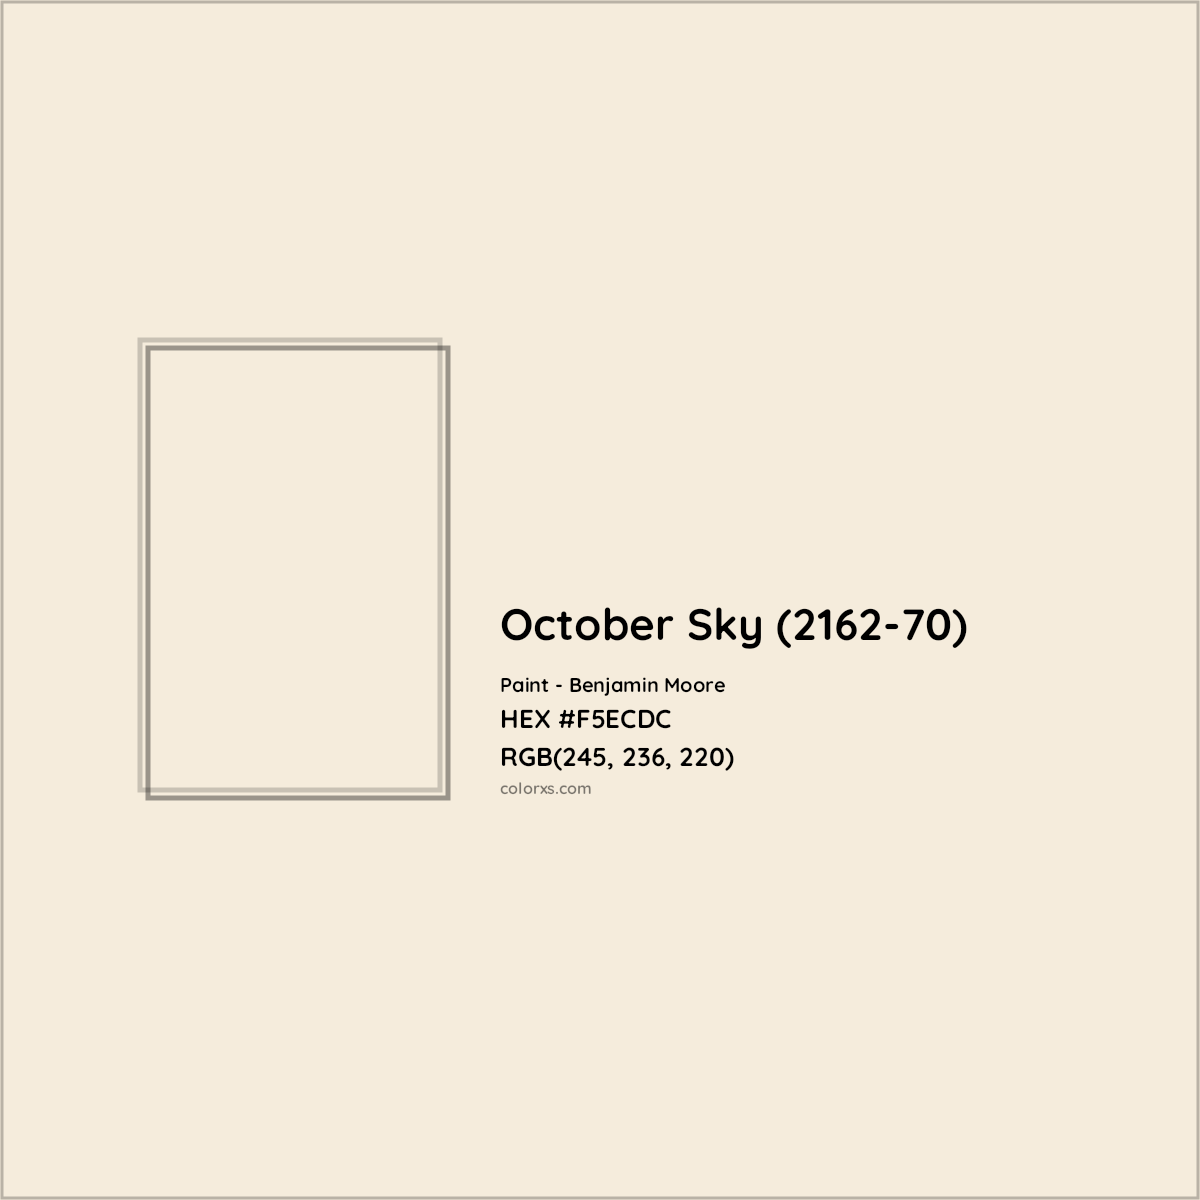 HEX #F5ECDC October Sky (2162-70) Paint Benjamin Moore - Color Code